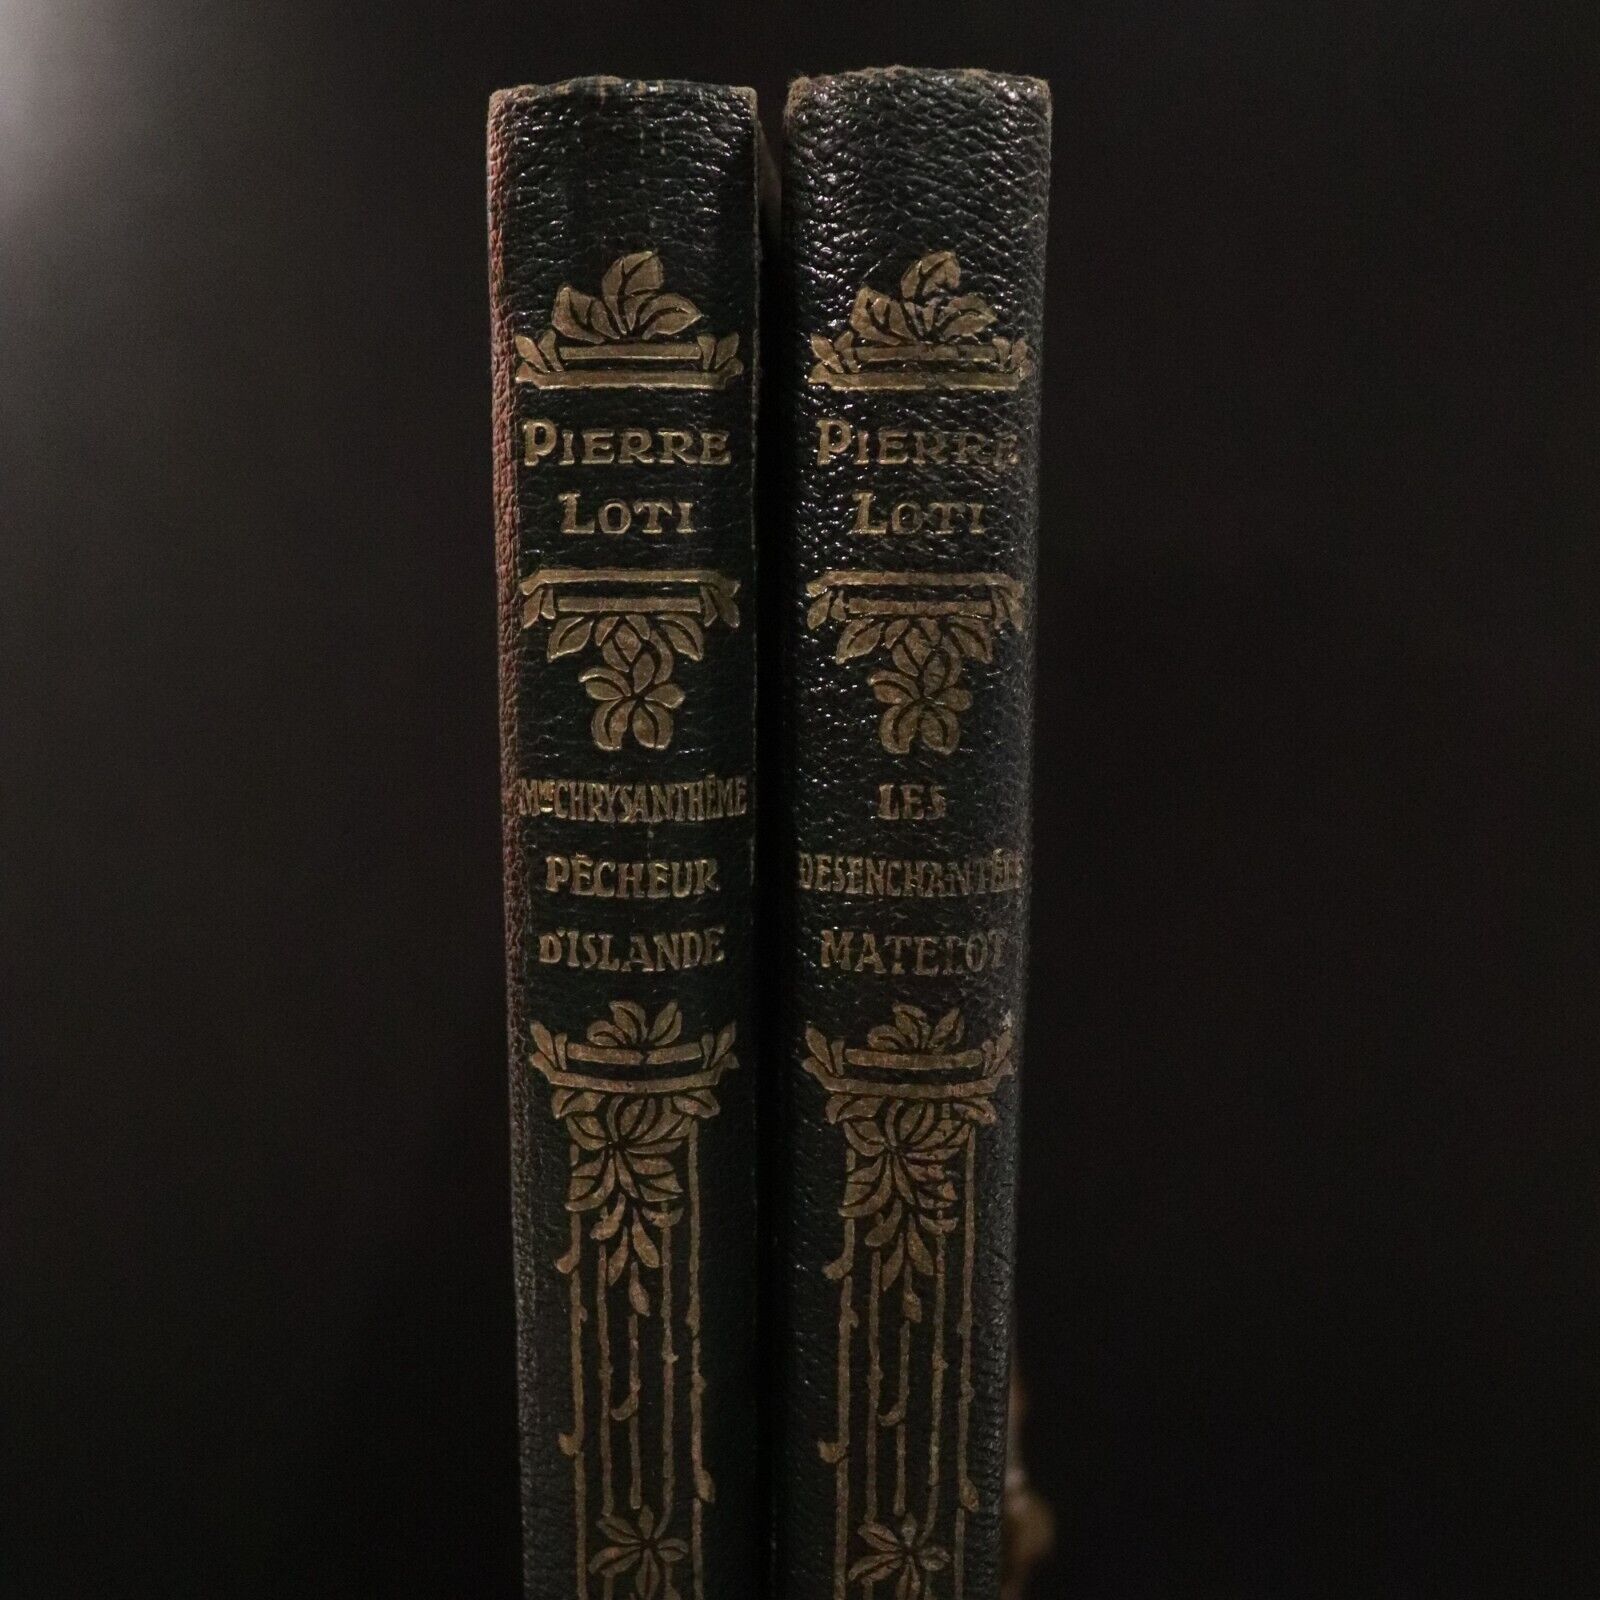 1923 2vol Romans Complets Illustres De Pierre Loti Antique French Fiction Books - 0